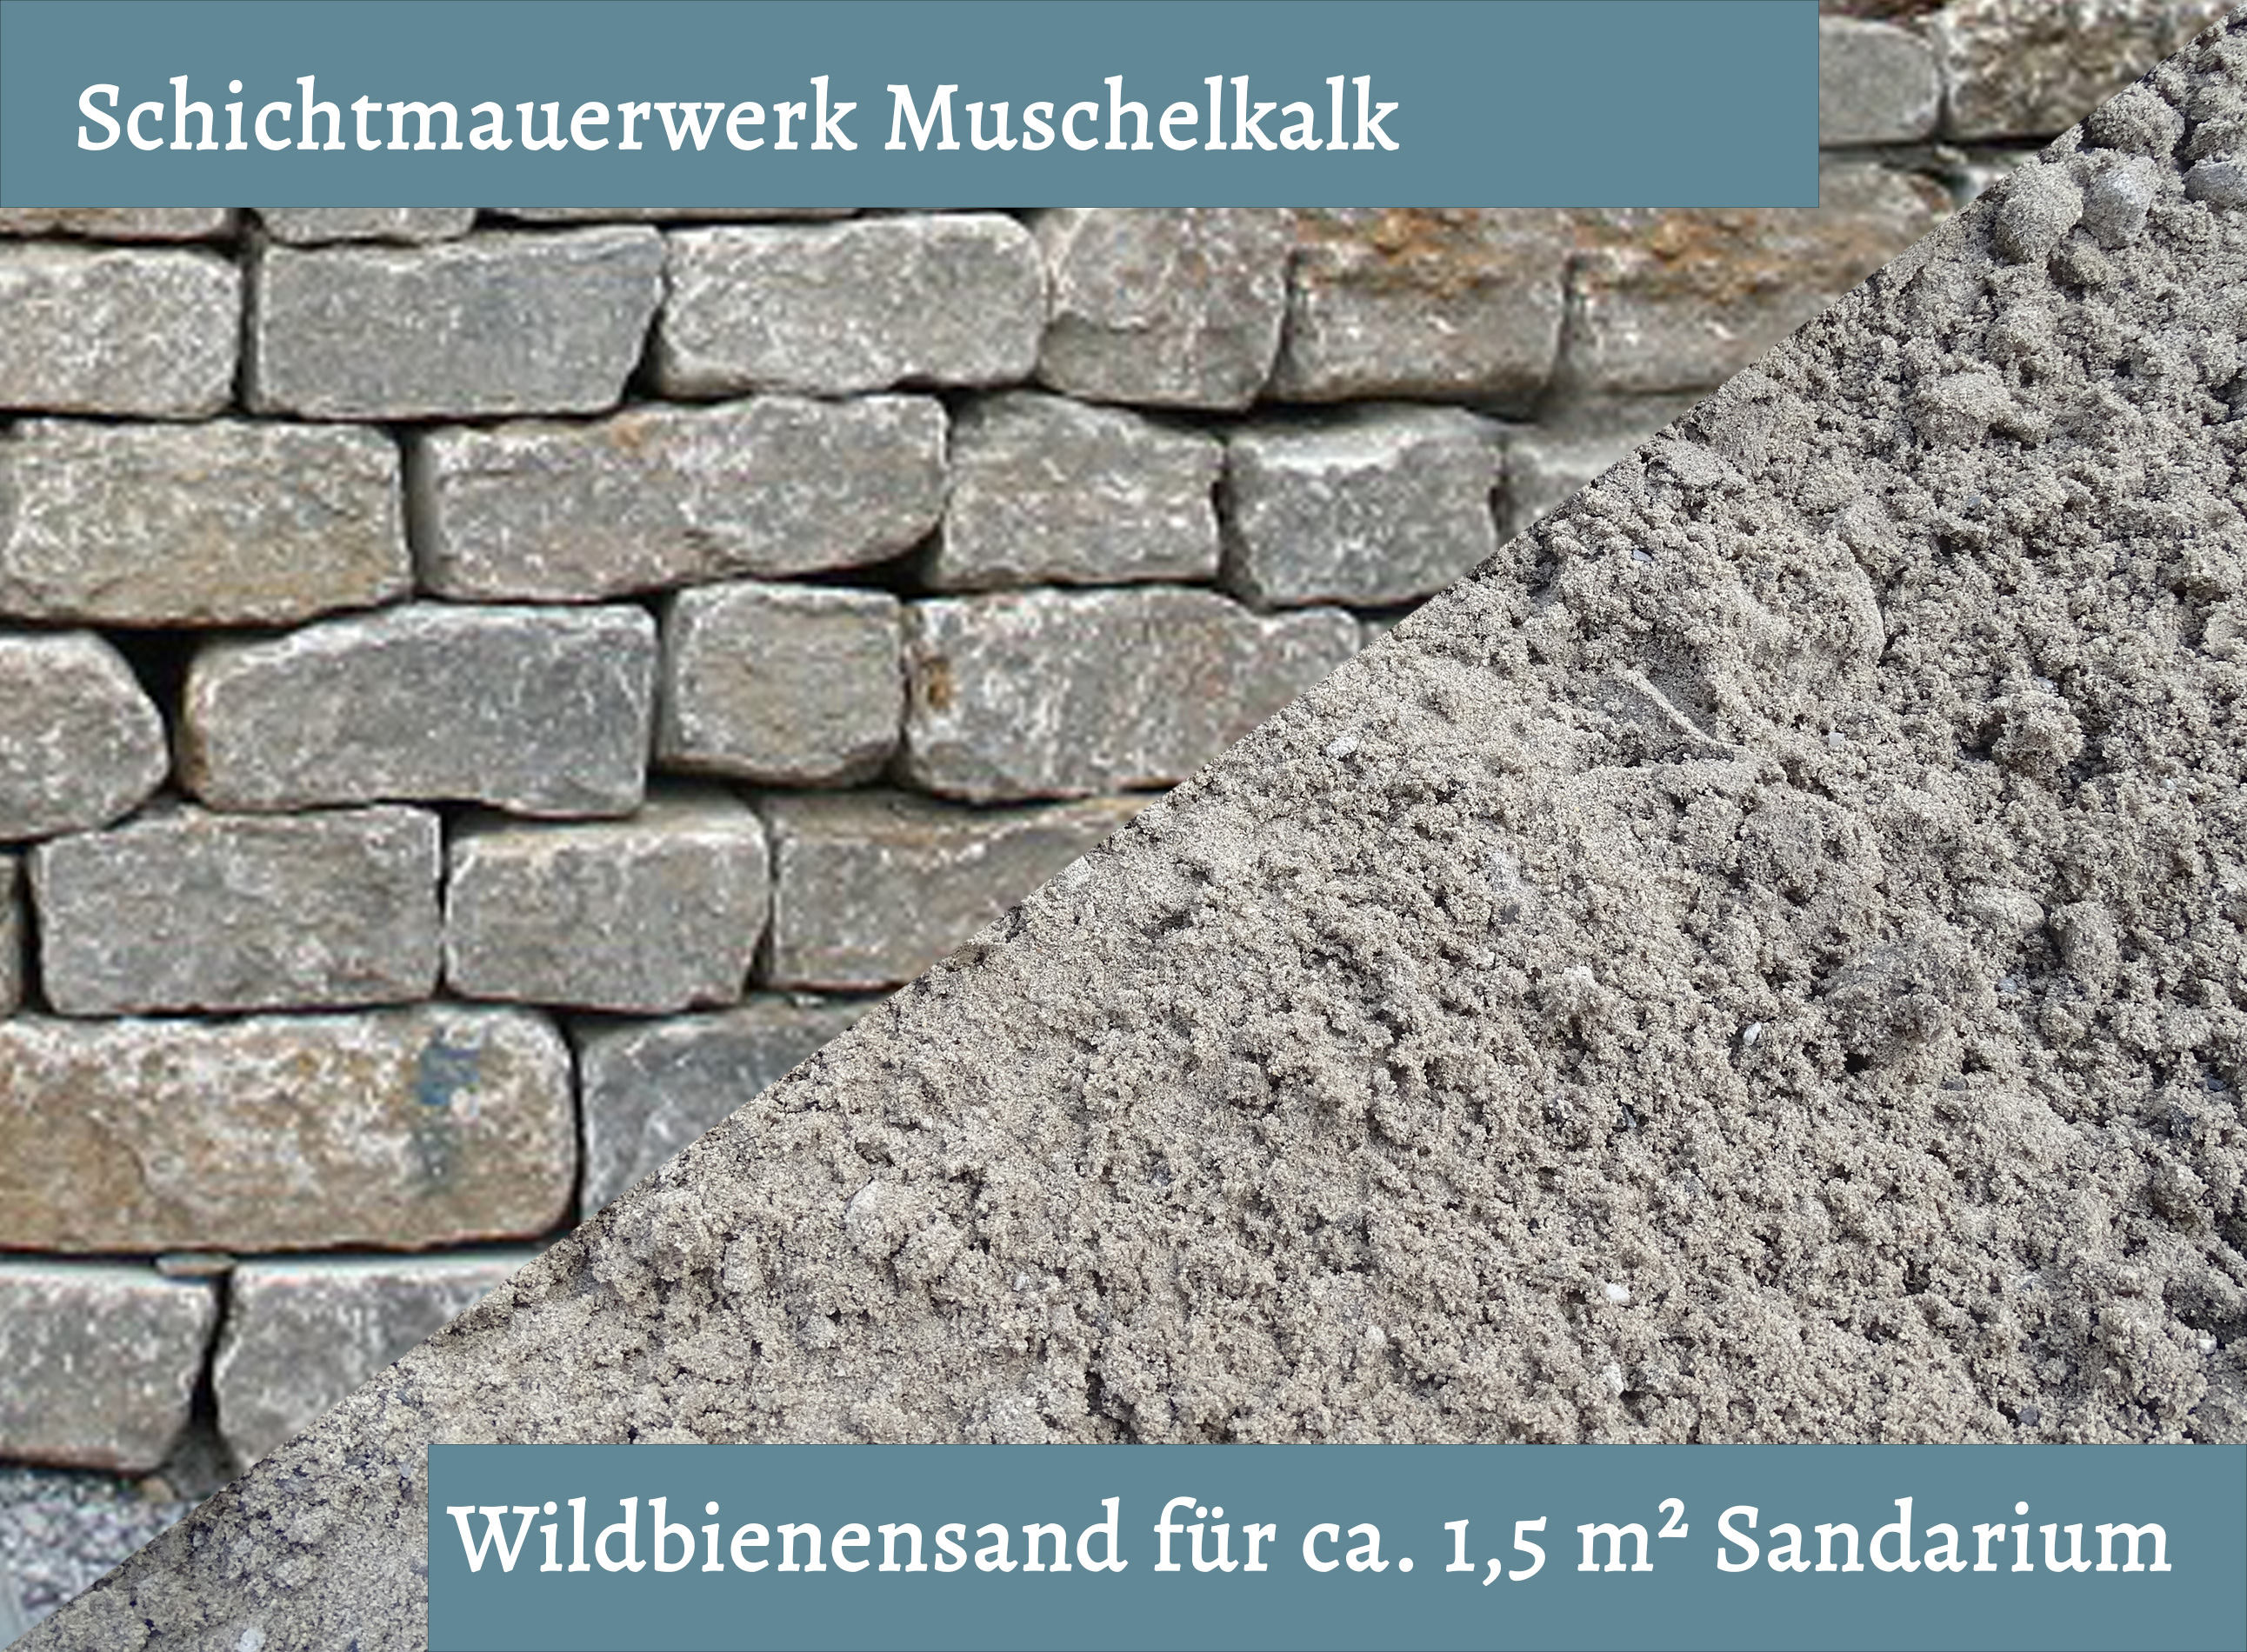 Wildbienensand mit Schichtmauer Muschelkalk für Sandarium 1,5 m²